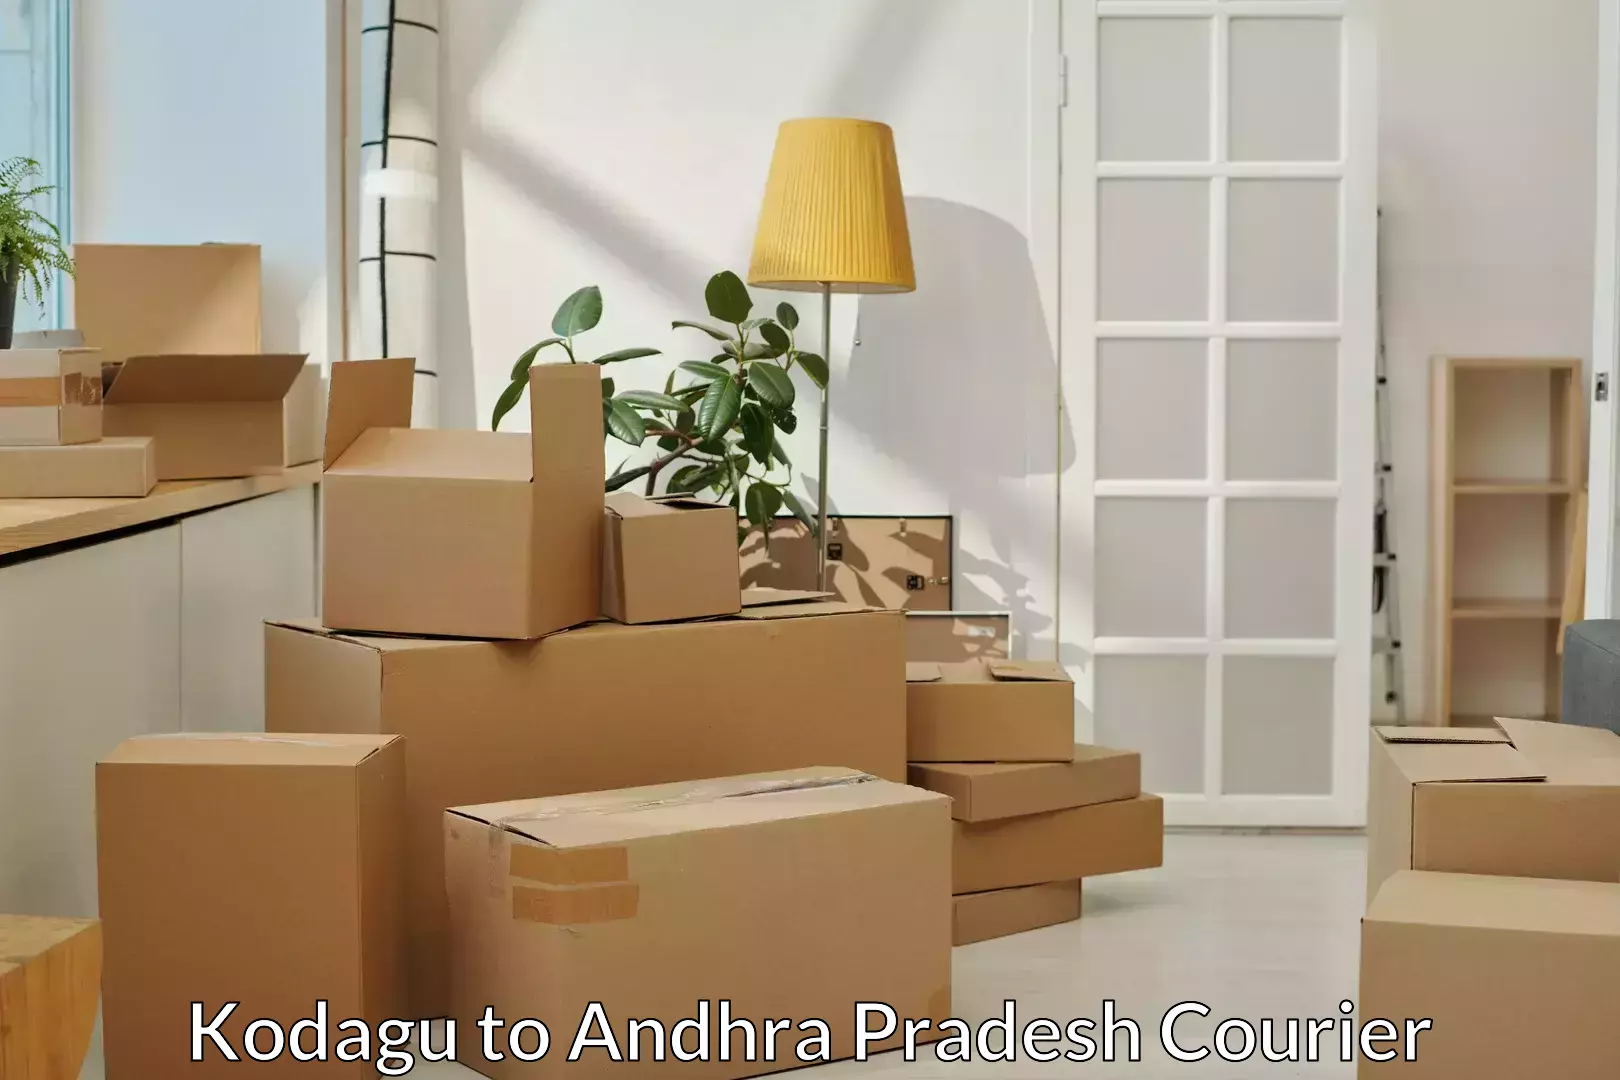 Professional movers Kodagu to Andhra Pradesh